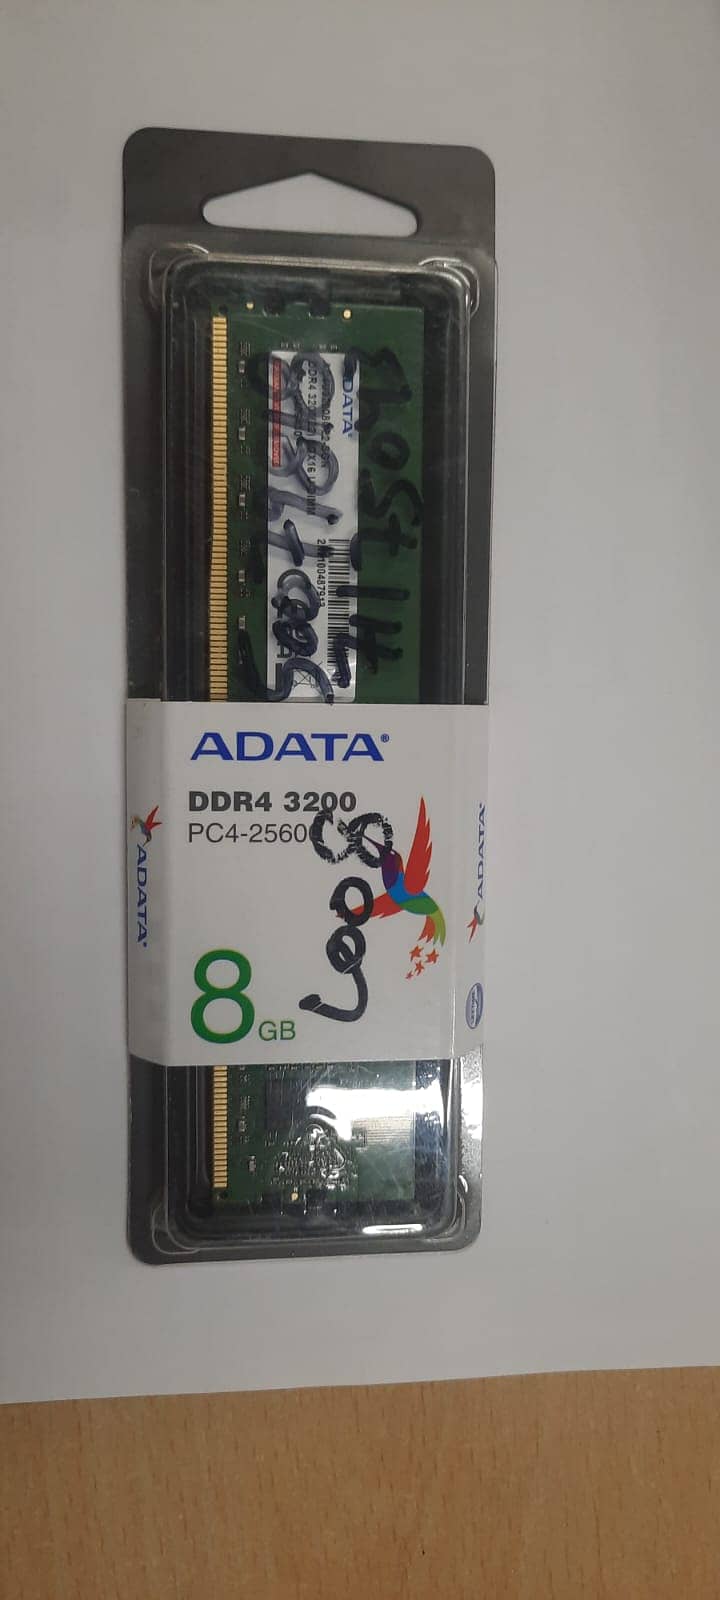 DDR4-3200, PC42560 2